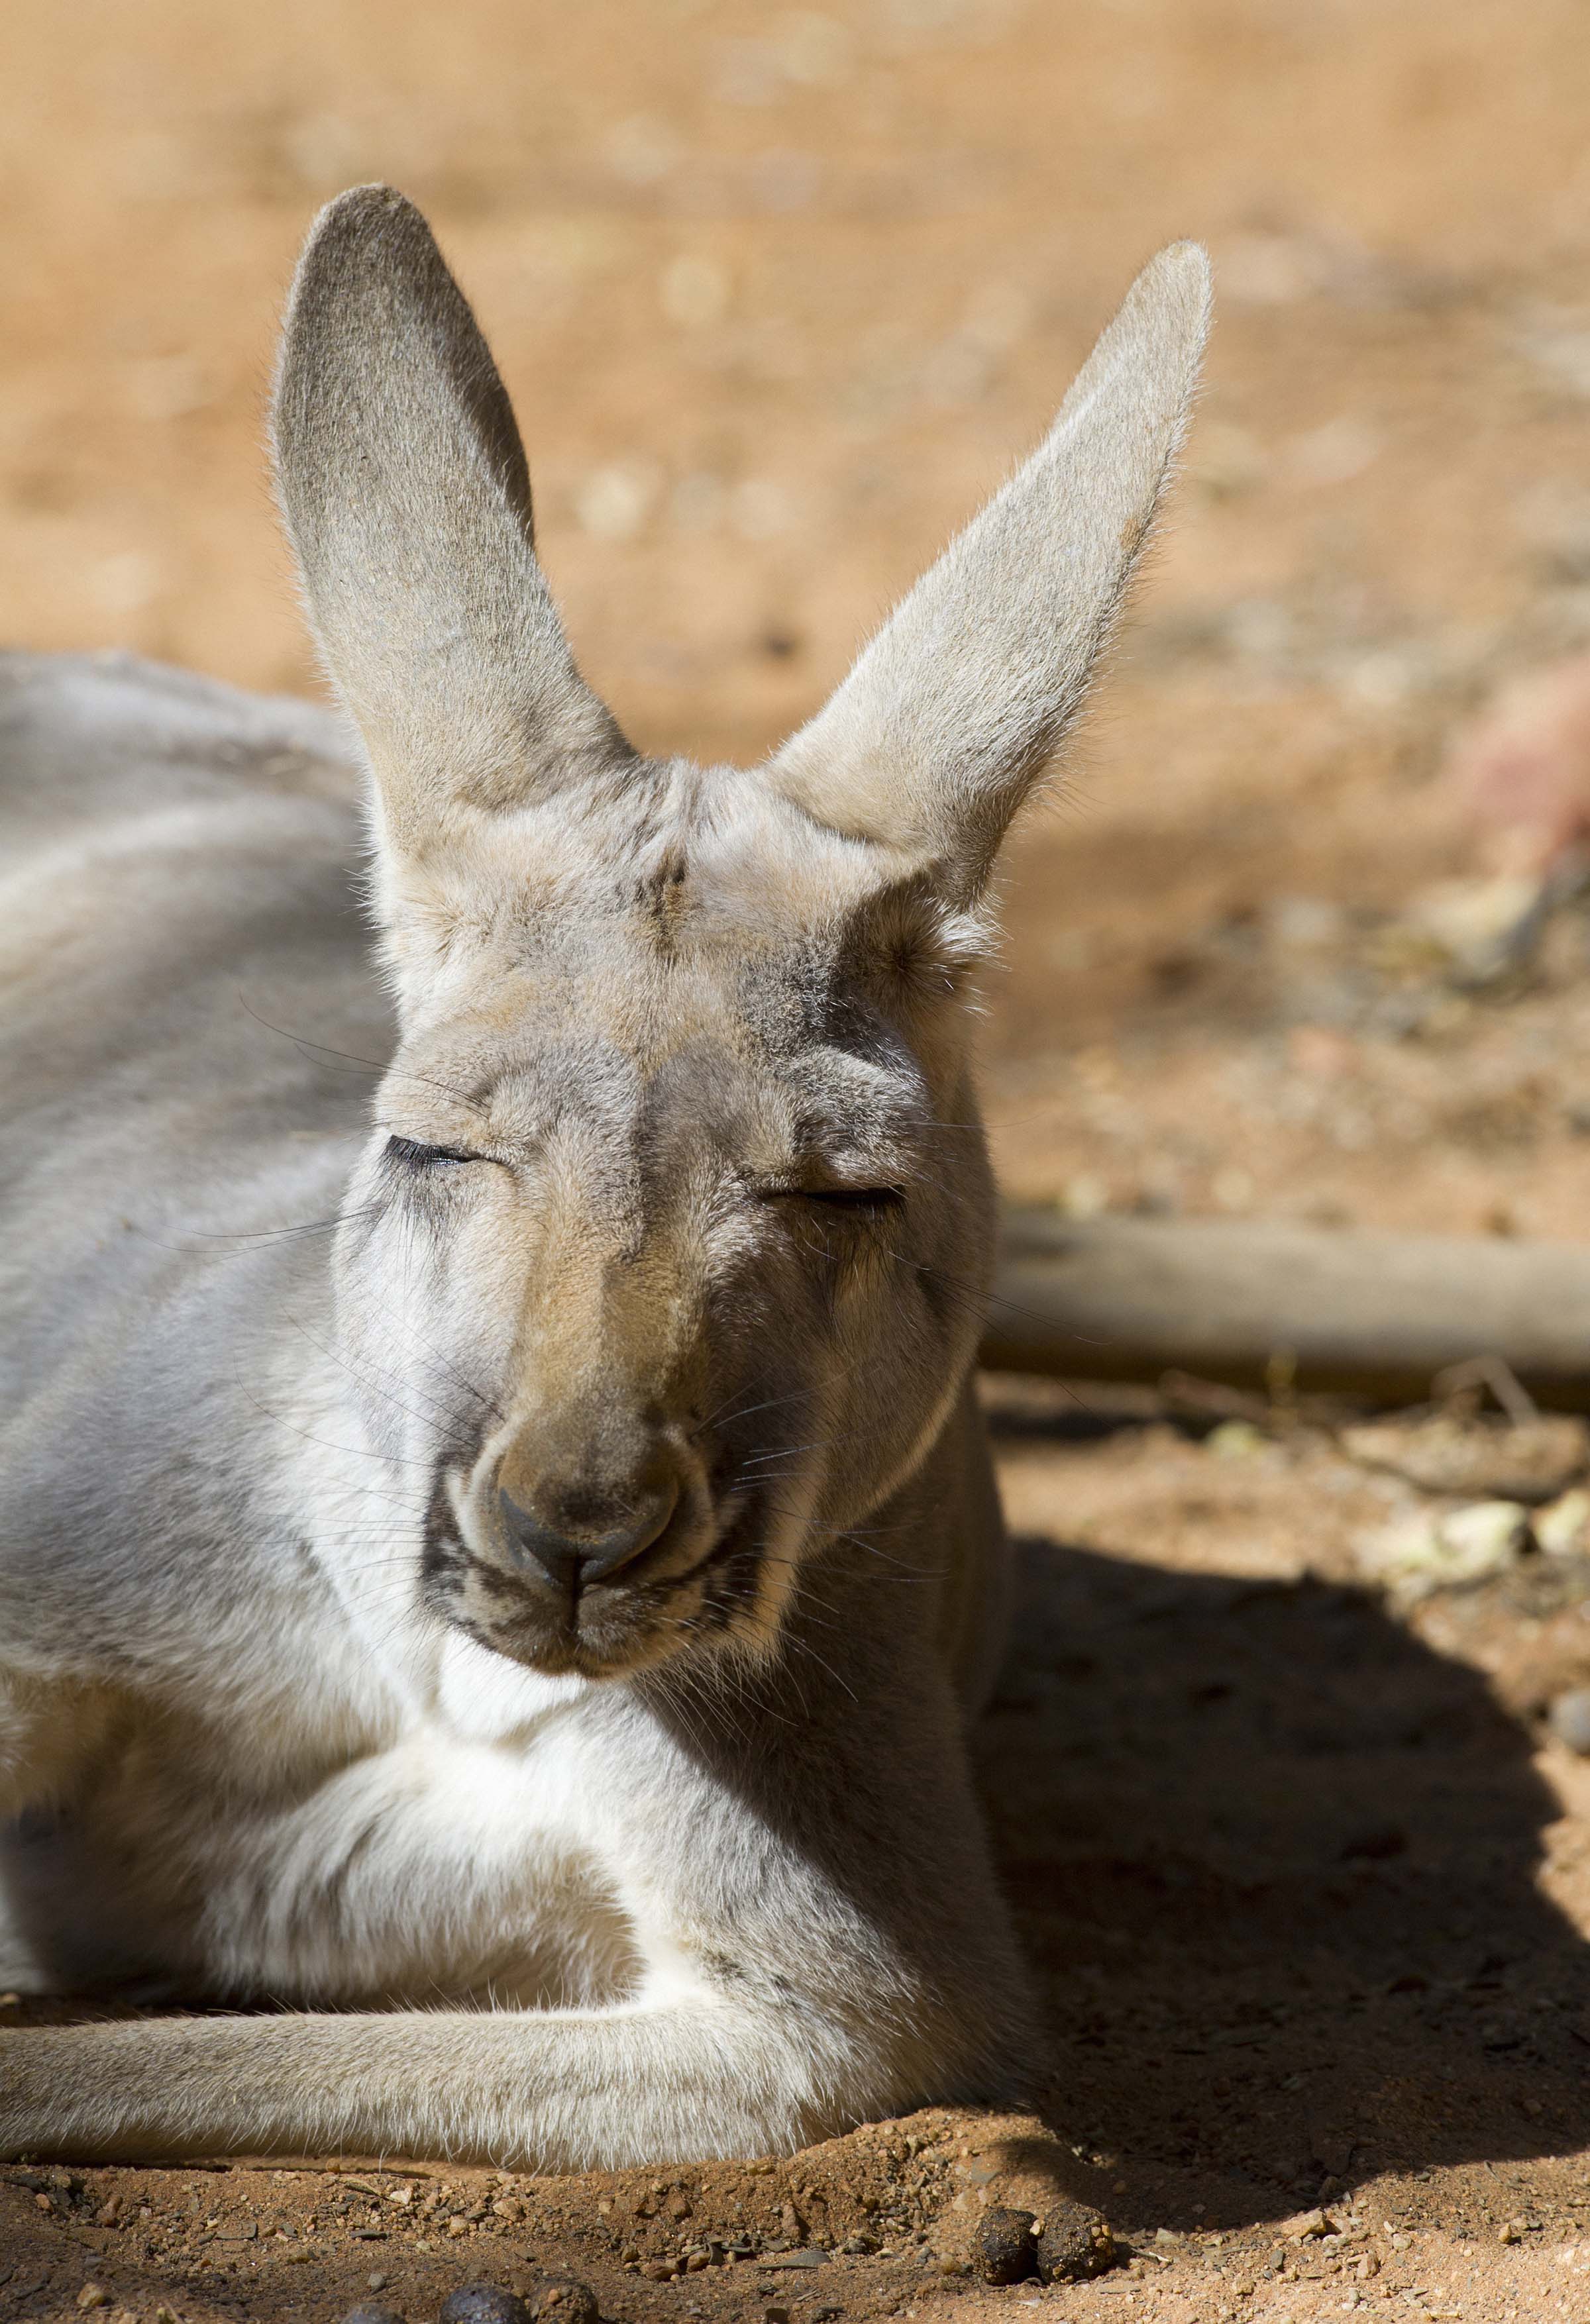 Kangaroo napping in the sun